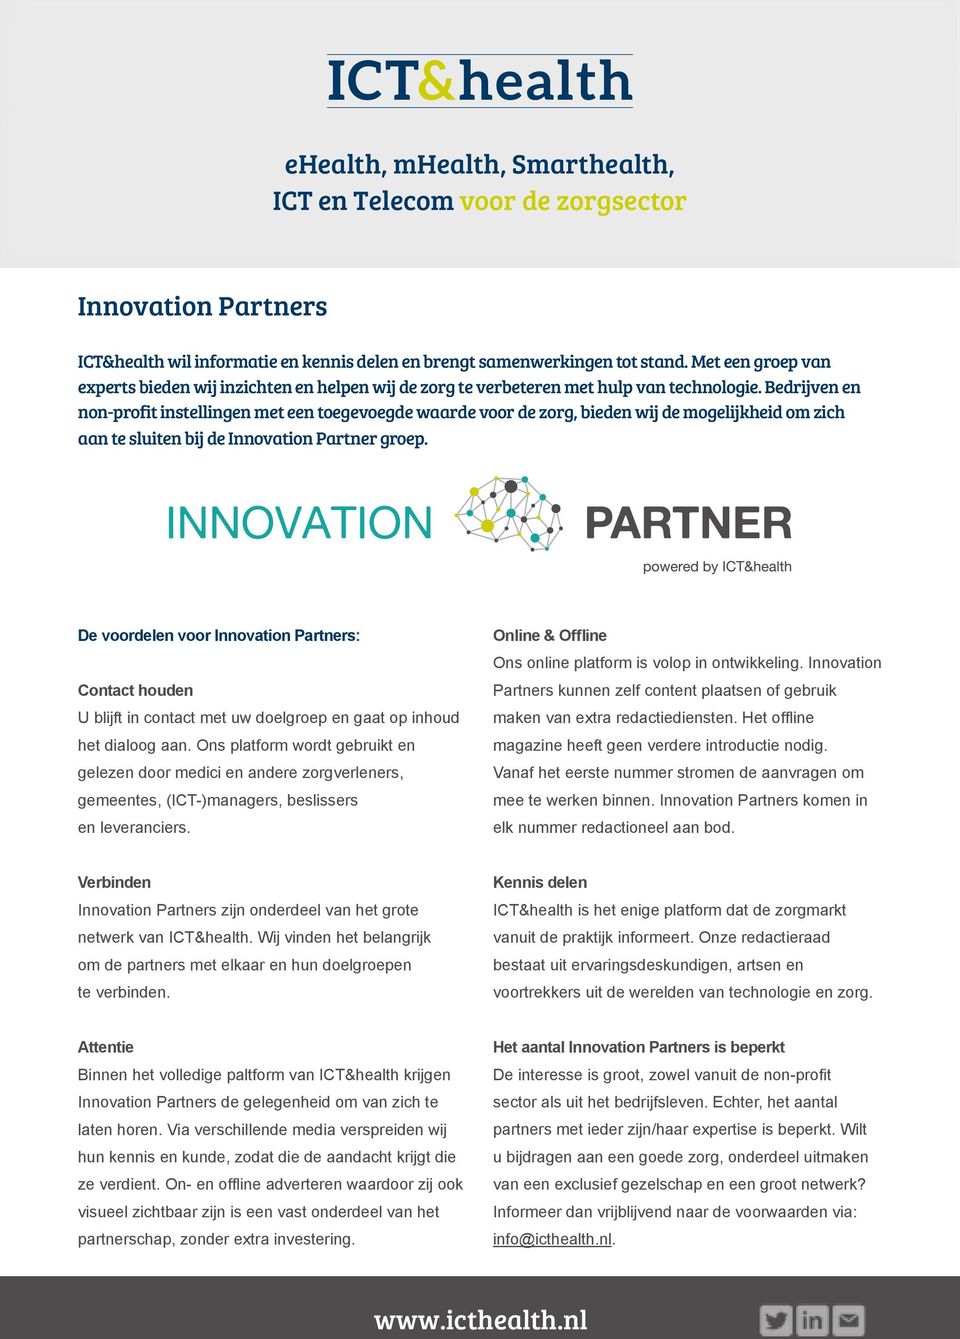 Bedrijven en non-profit instellingen met een toegevoegde waarde voor de zorg, bieden wij de mogelijkheid om zich aan te sluiten bij de Innovation Partner groep.